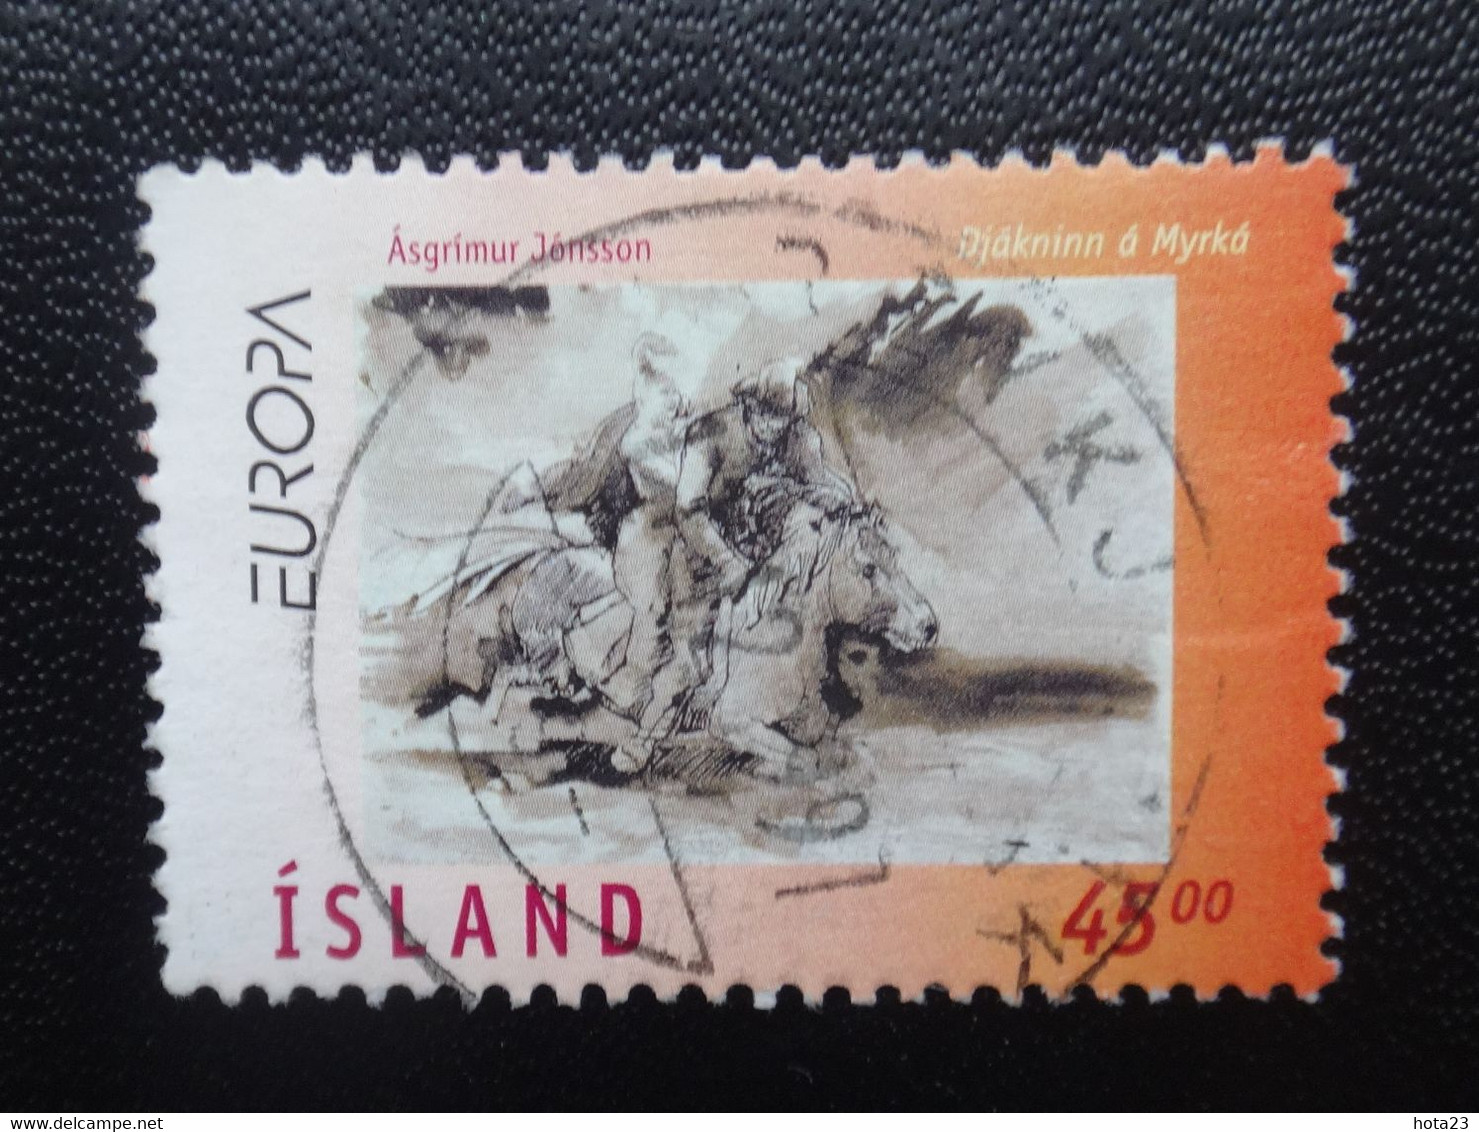 Island Iceland Islande MNH 1997 Europe Legends Used Stamp  (0) - Oblitérés